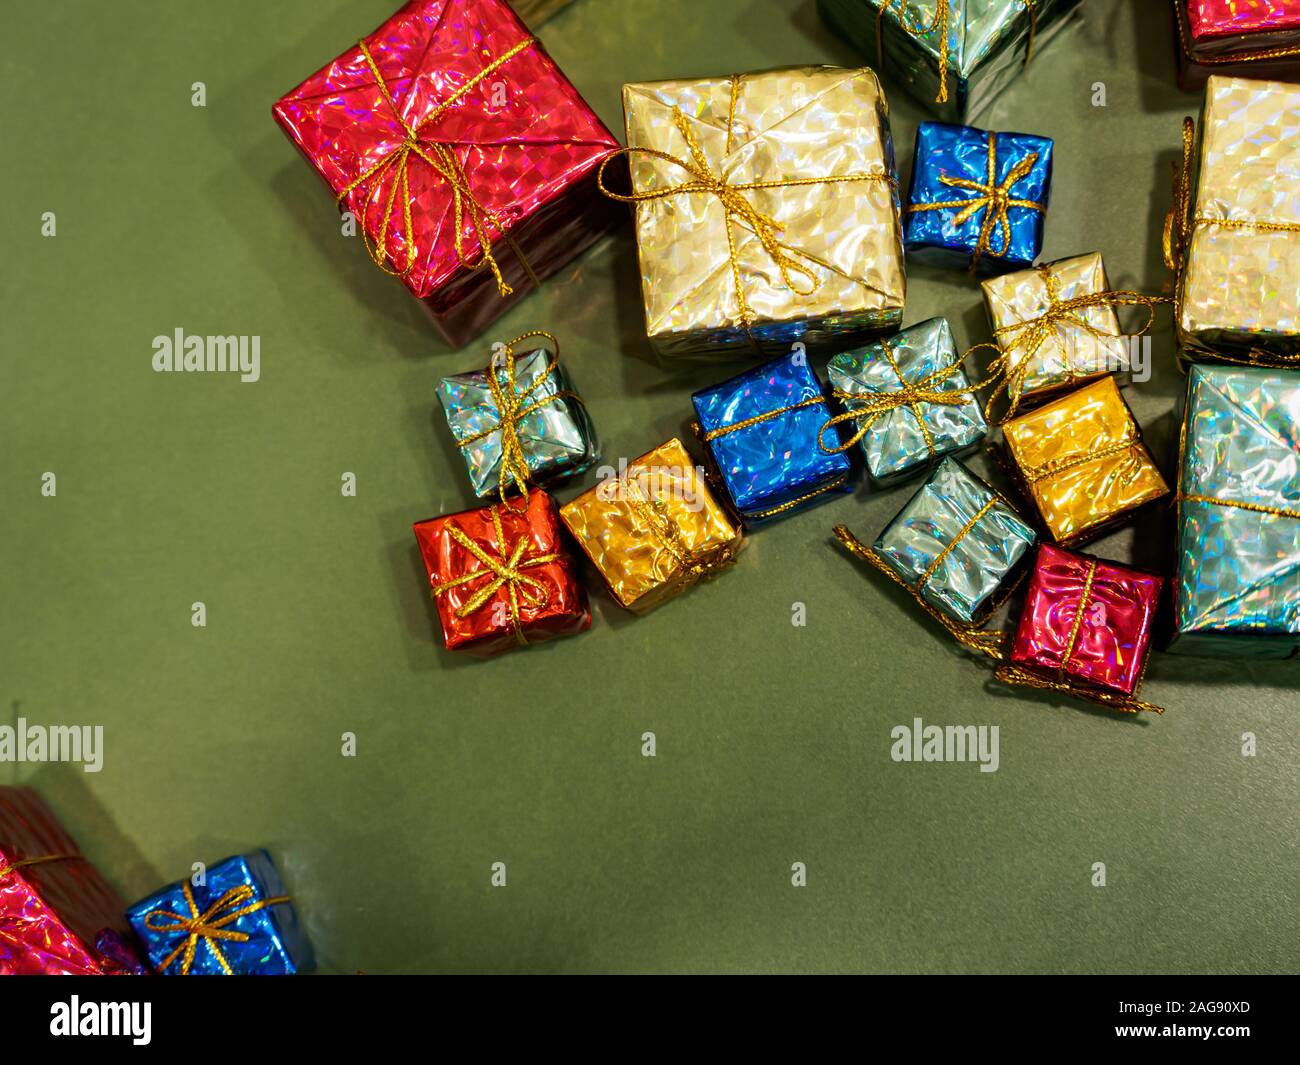 Flach der sortierten präsentiert in glänzendes Papier und Bändern auf einem grünen Hintergrund gewickelt. Weihnachten / Weihnachten/Geburtstag Geschenke Thema Stockfoto